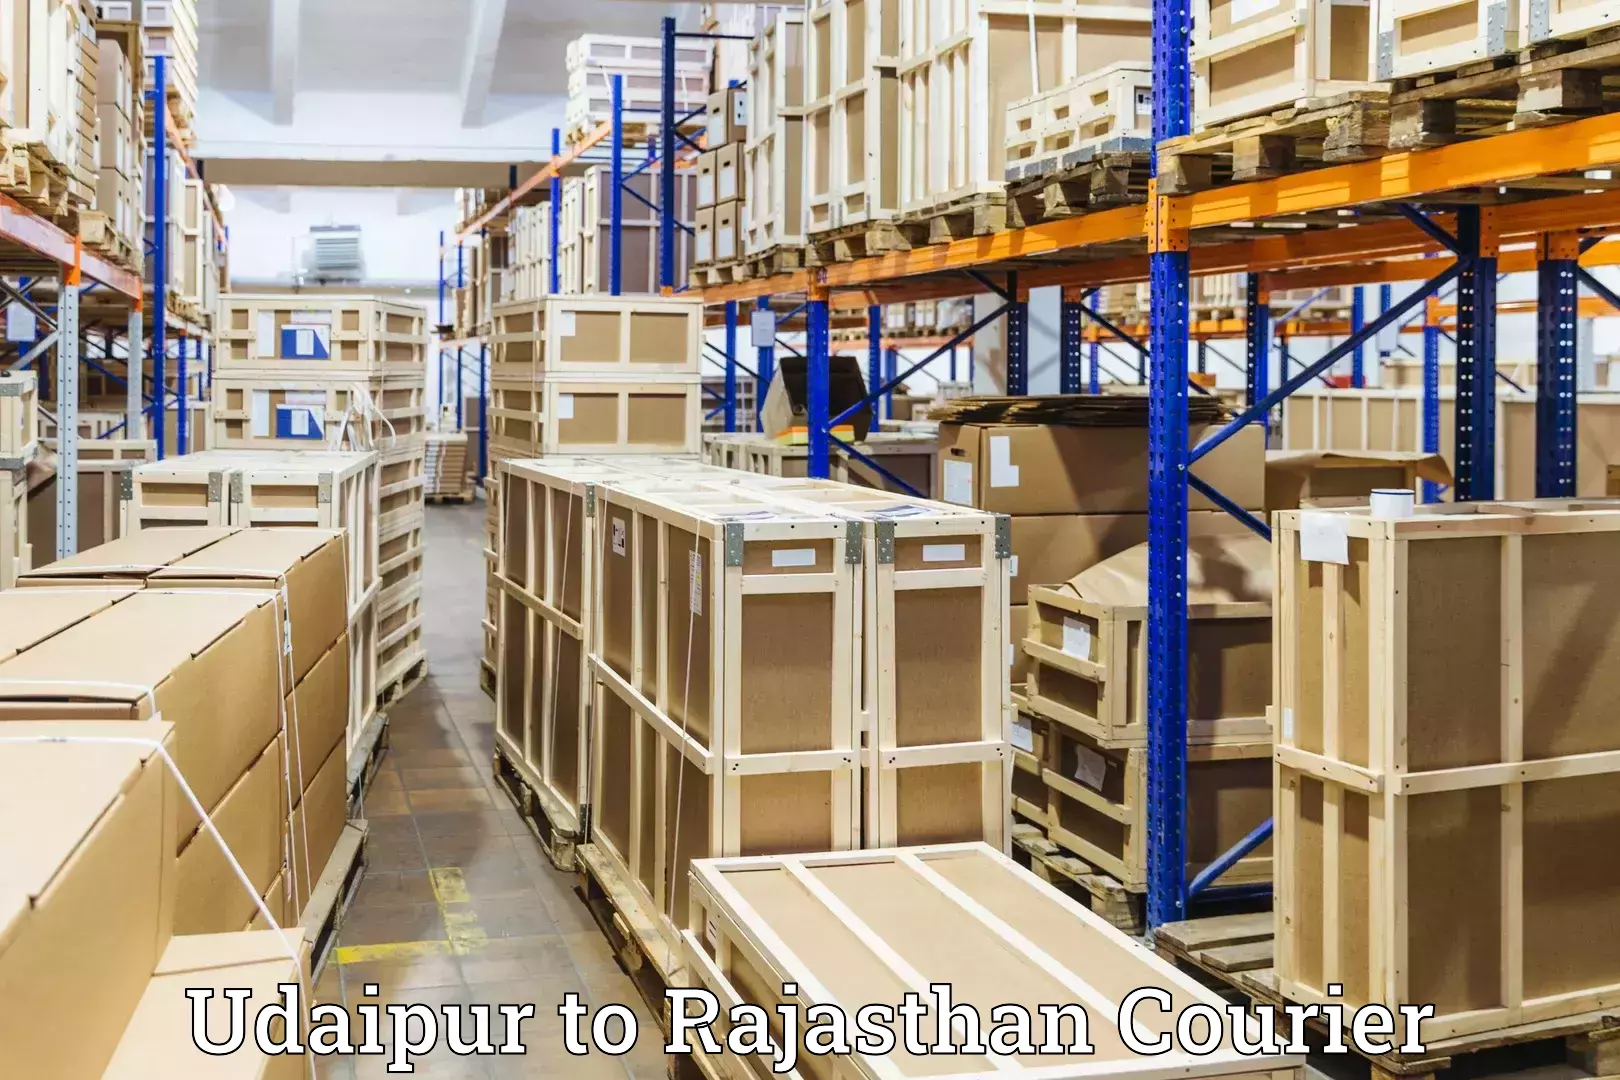 Luggage shipment tracking Udaipur to Kekri